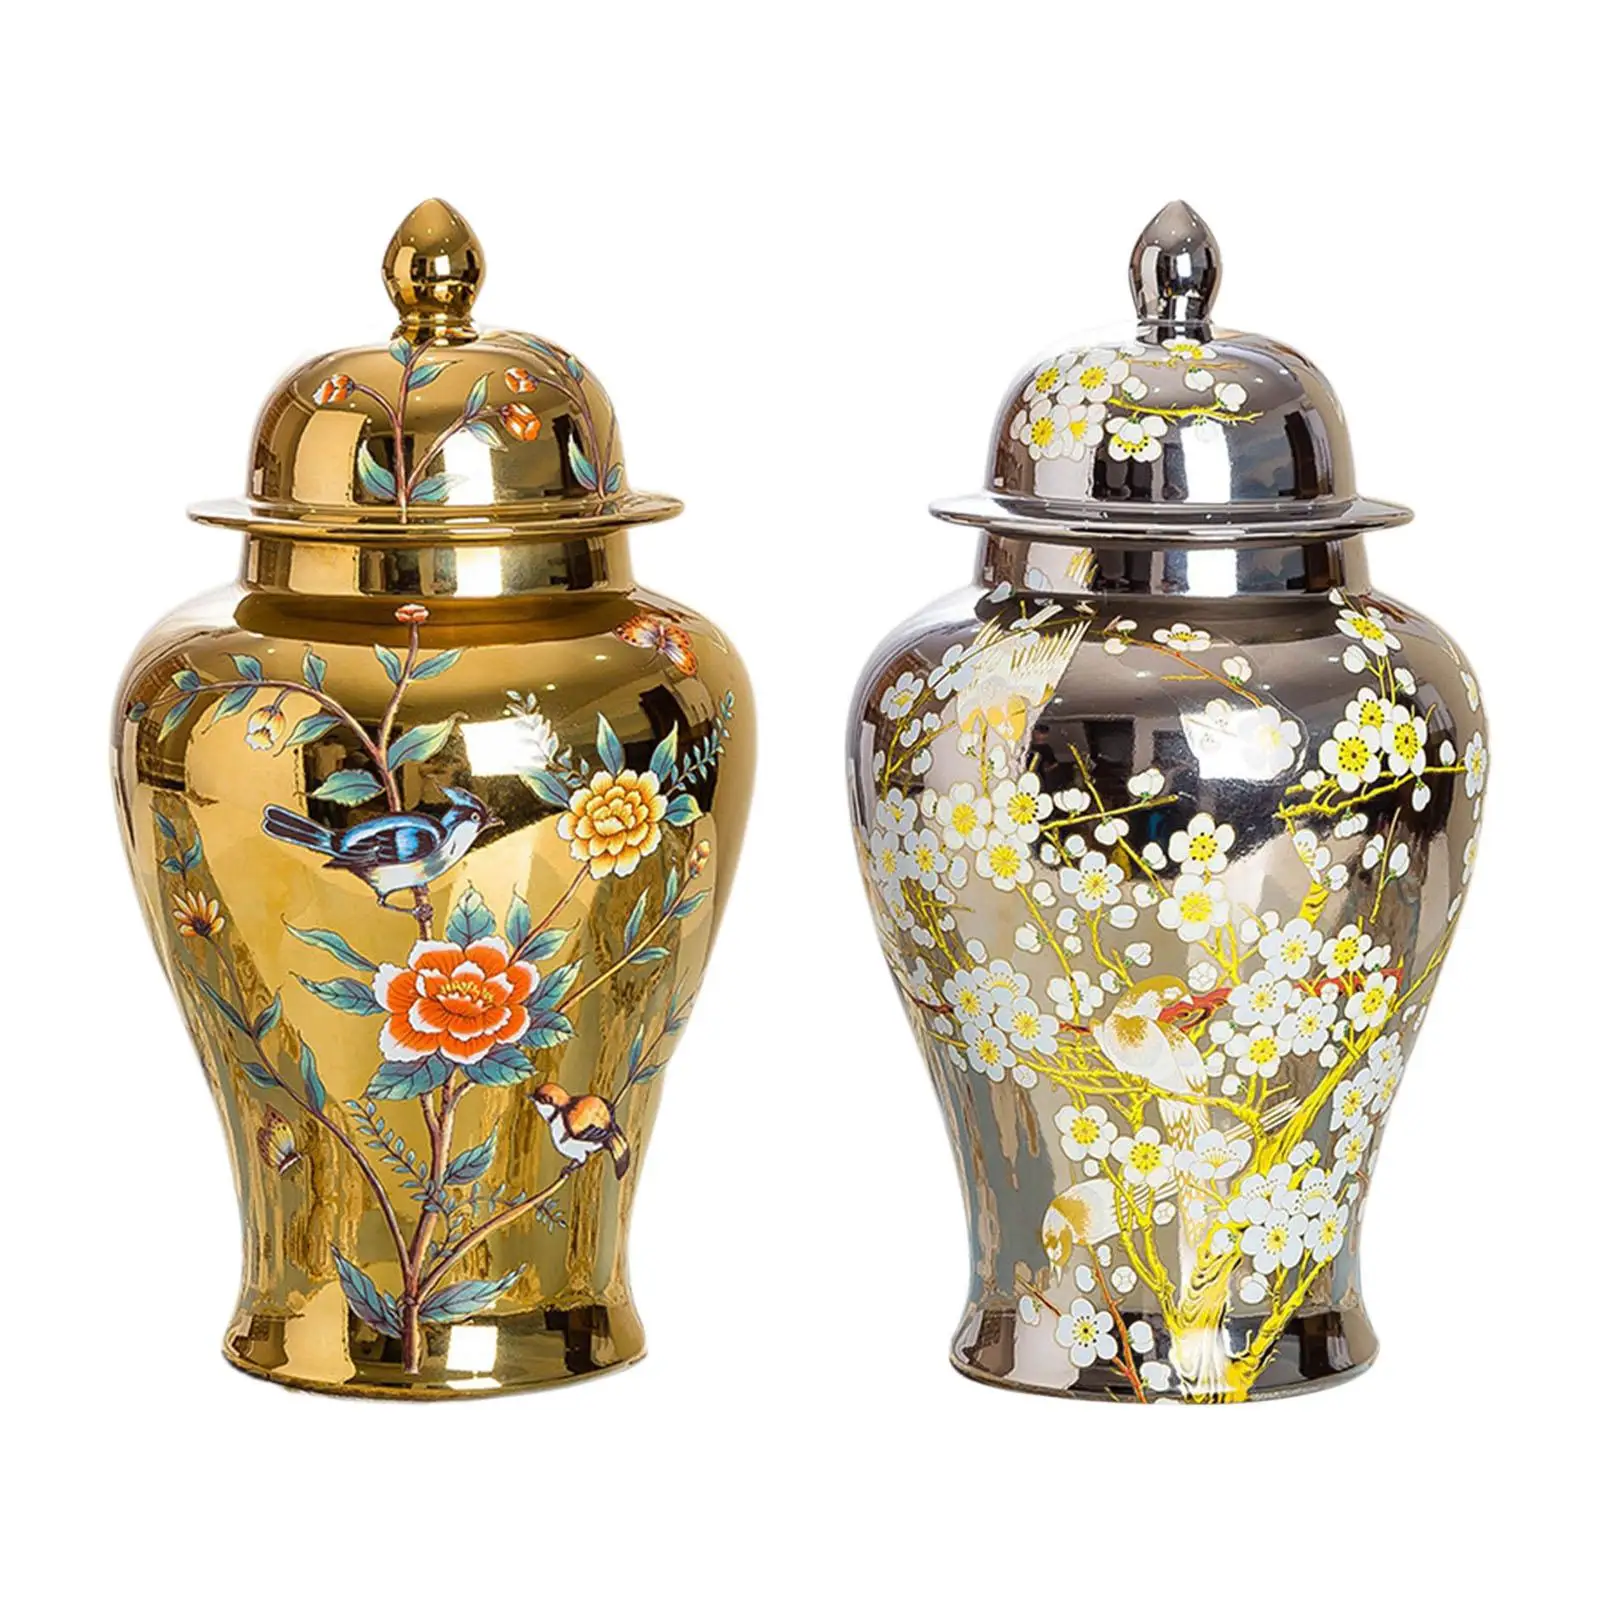 

Керамическая ваза для цветов, Храмовая банка, фарфоровая банка для имбиря для коллекции фермерского хозяйства